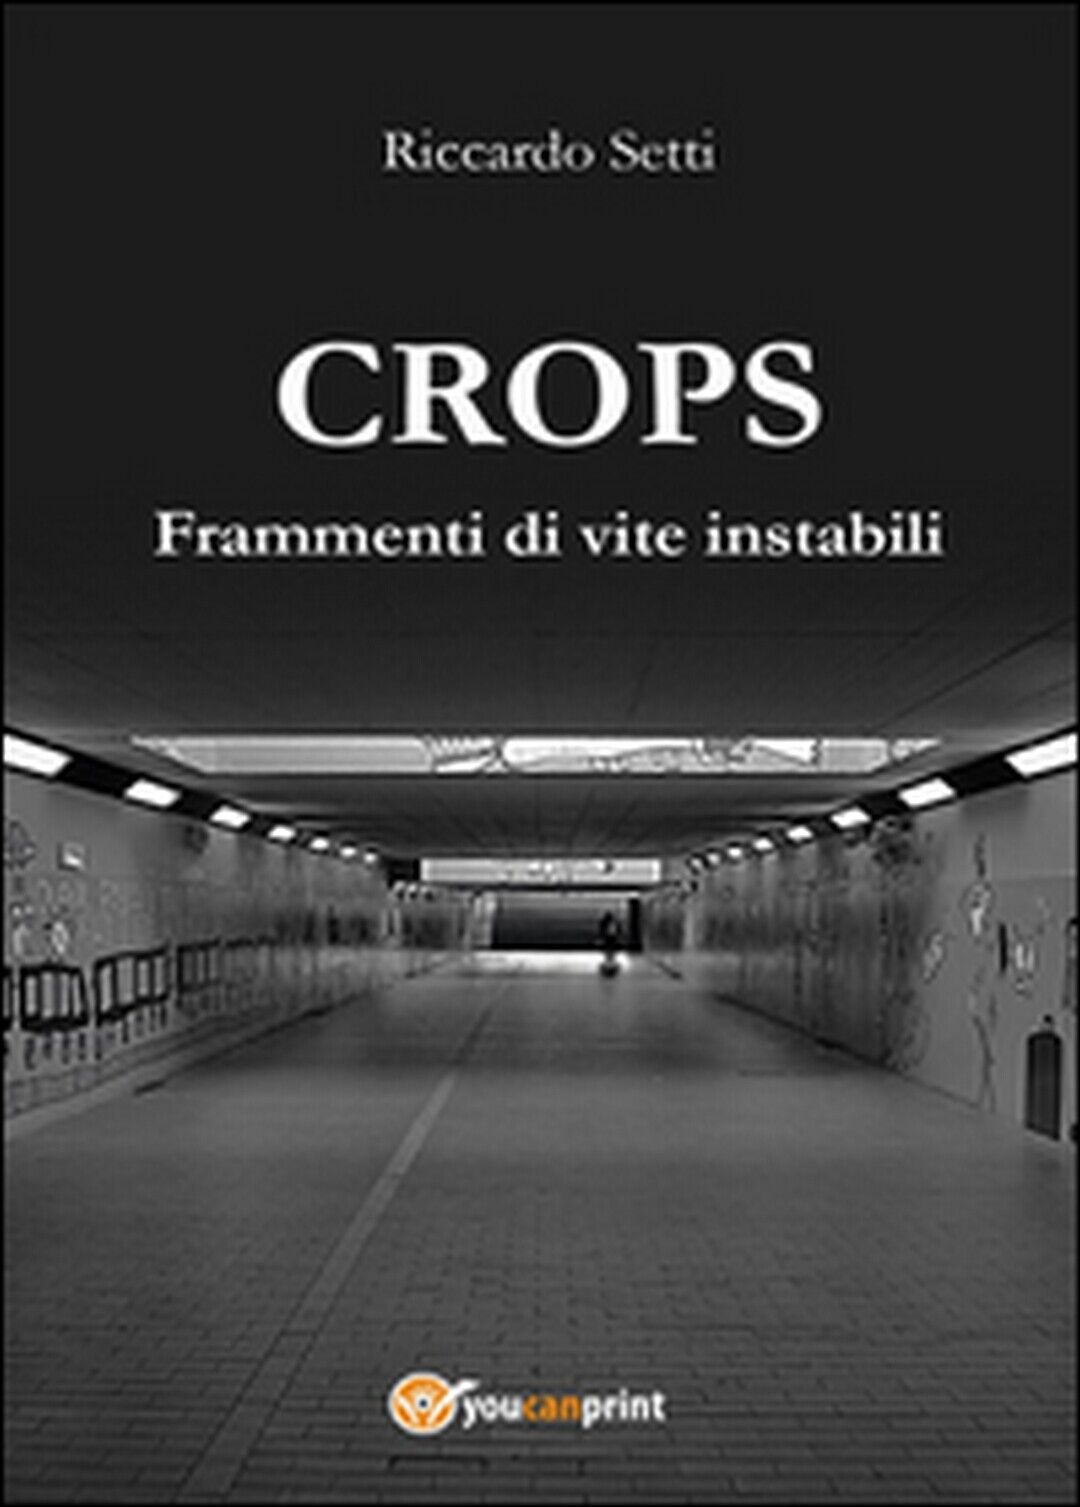 CROPS. Frammenti di vite instabili  di Riccardo Setti,  2015,  Youcanprint